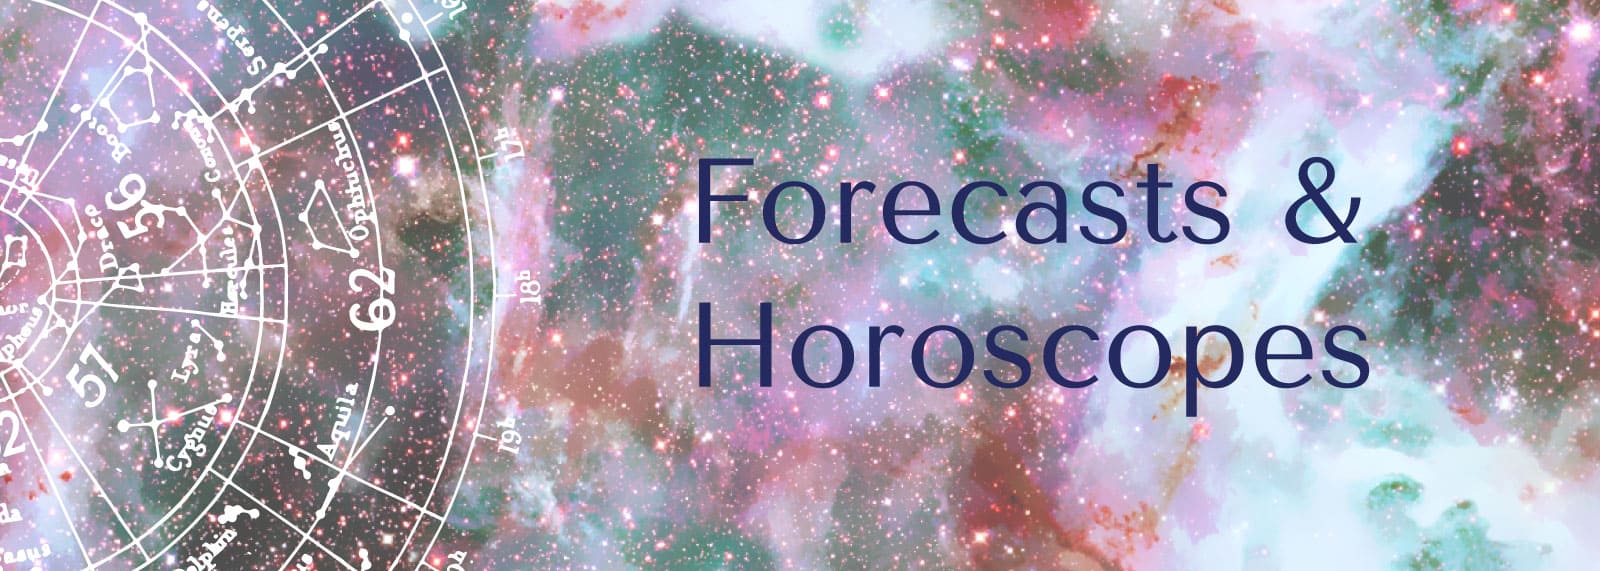 Forecasts and horoscopes. The Tarot Lady's monthly horoscopes. Astrology. Zodiac. 